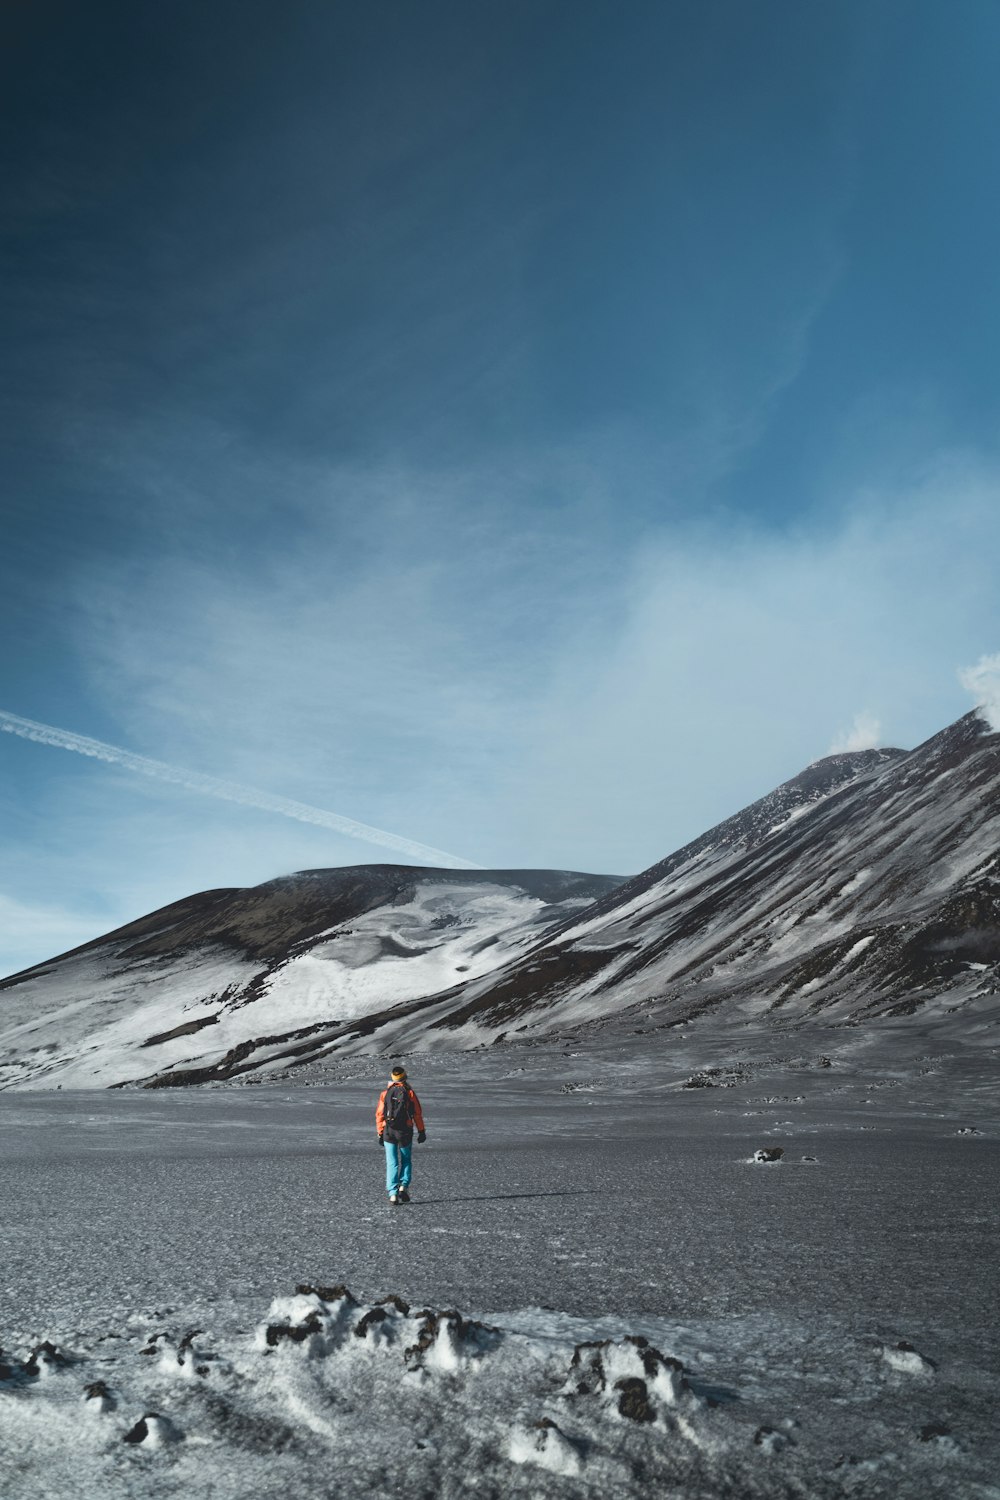 파란색 재킷과 파란색 데님 청바지를 입은 사람이 회색 산 근처 회색 모래 위에 서 있습니다.